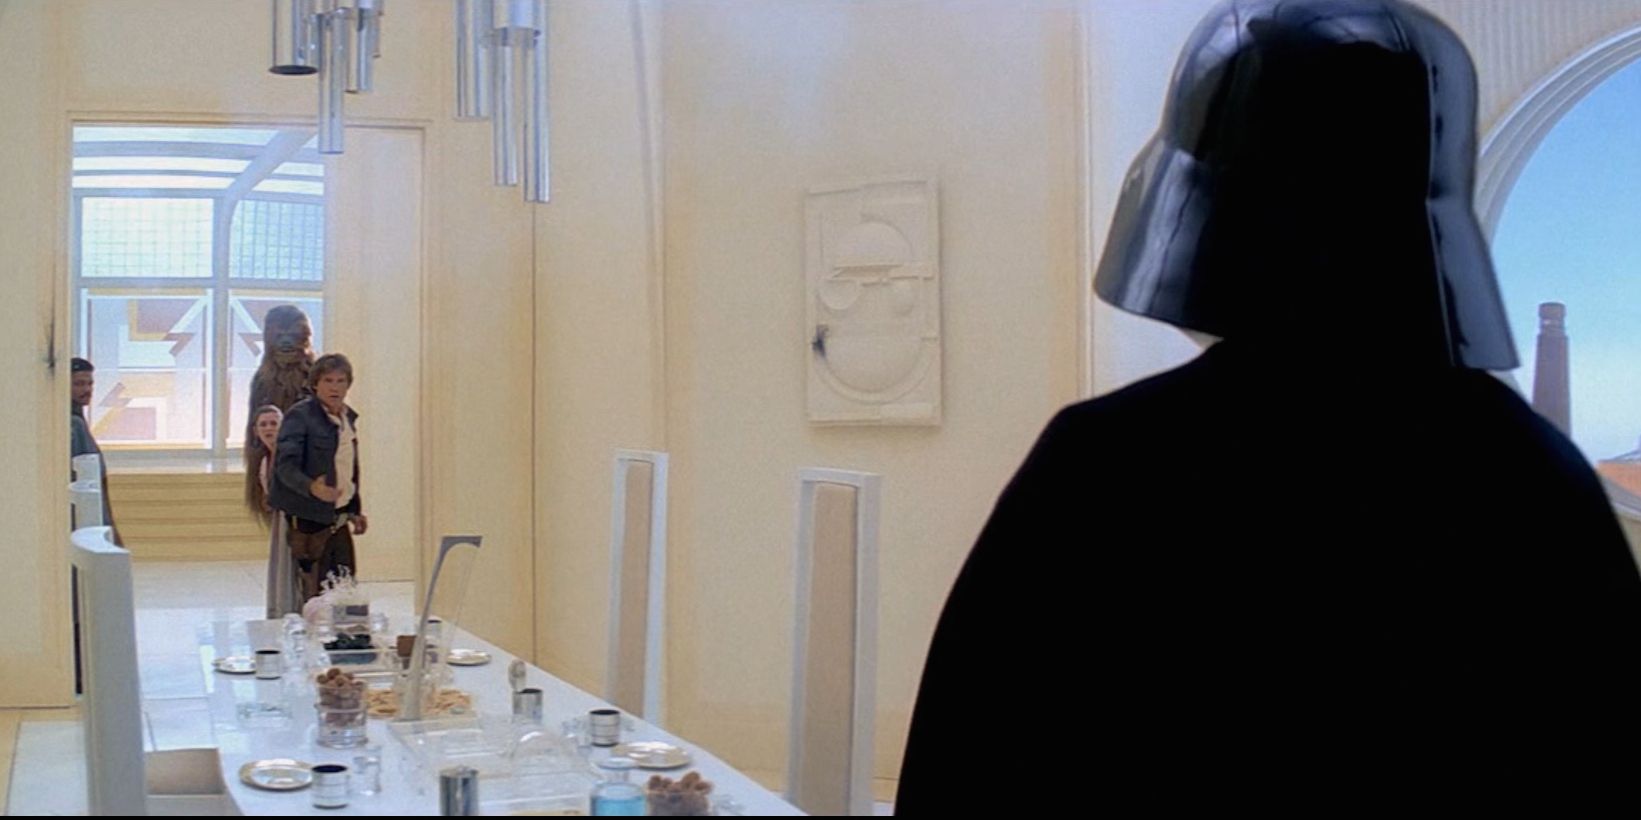 Darth Vader at dinner